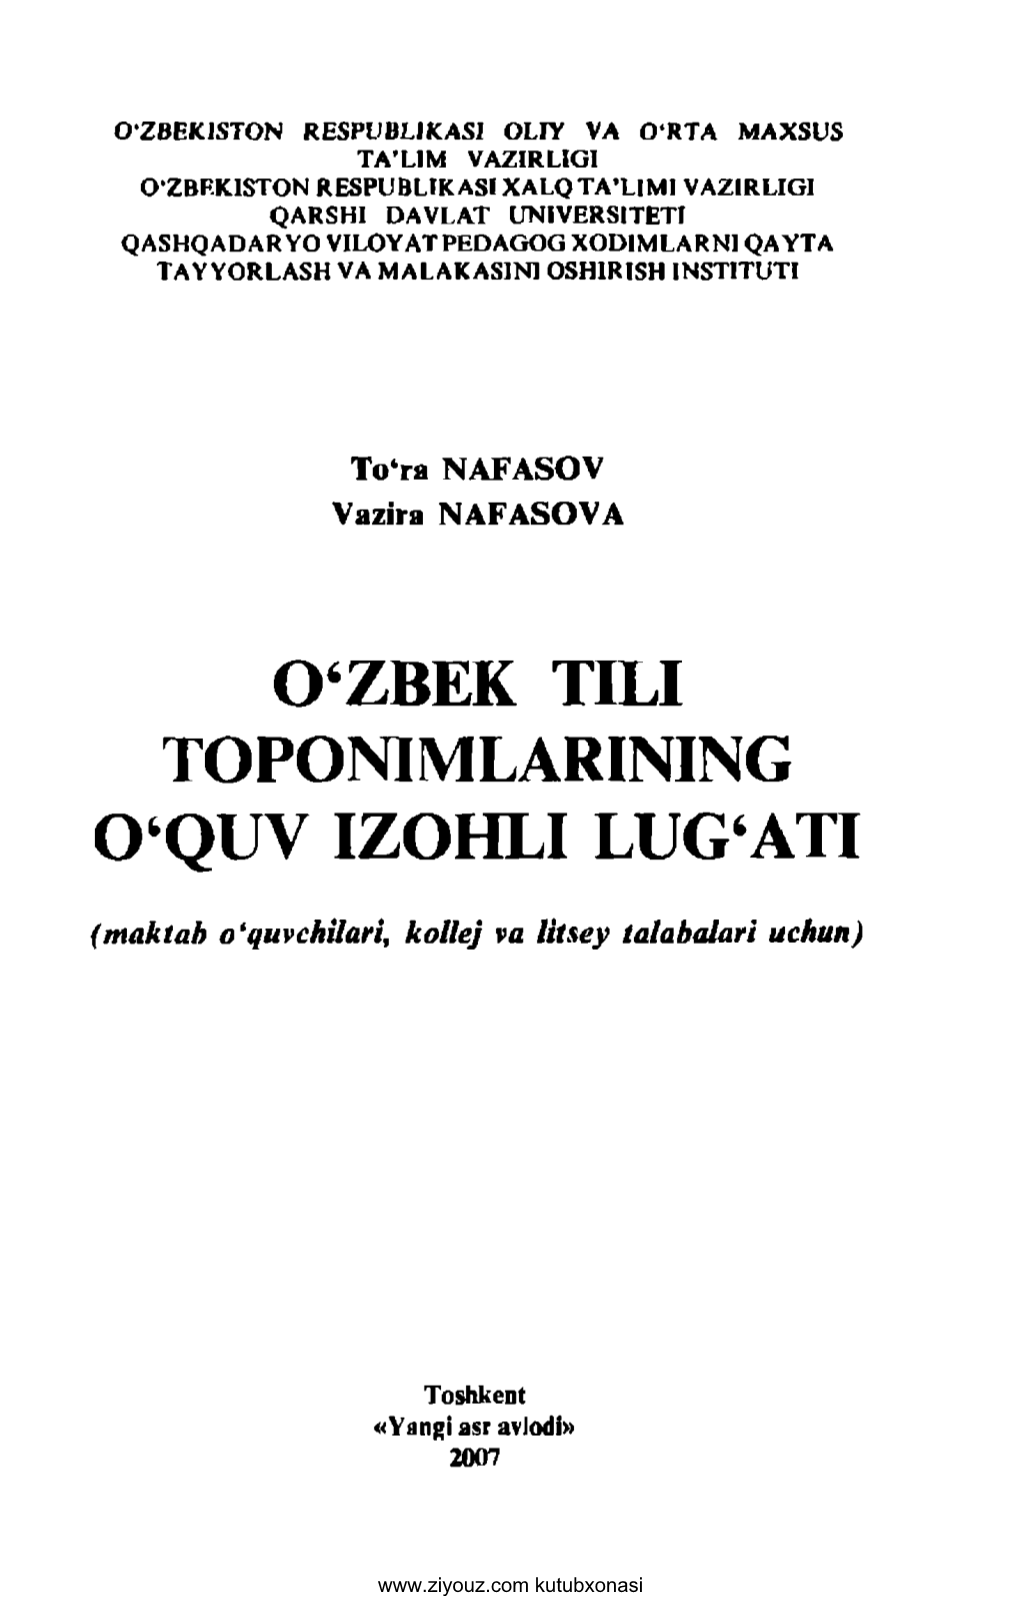 O'zbek Tili Toponimlarining O'quv Izohli Lug'ati (T.Nafasov, V.Nafasova)